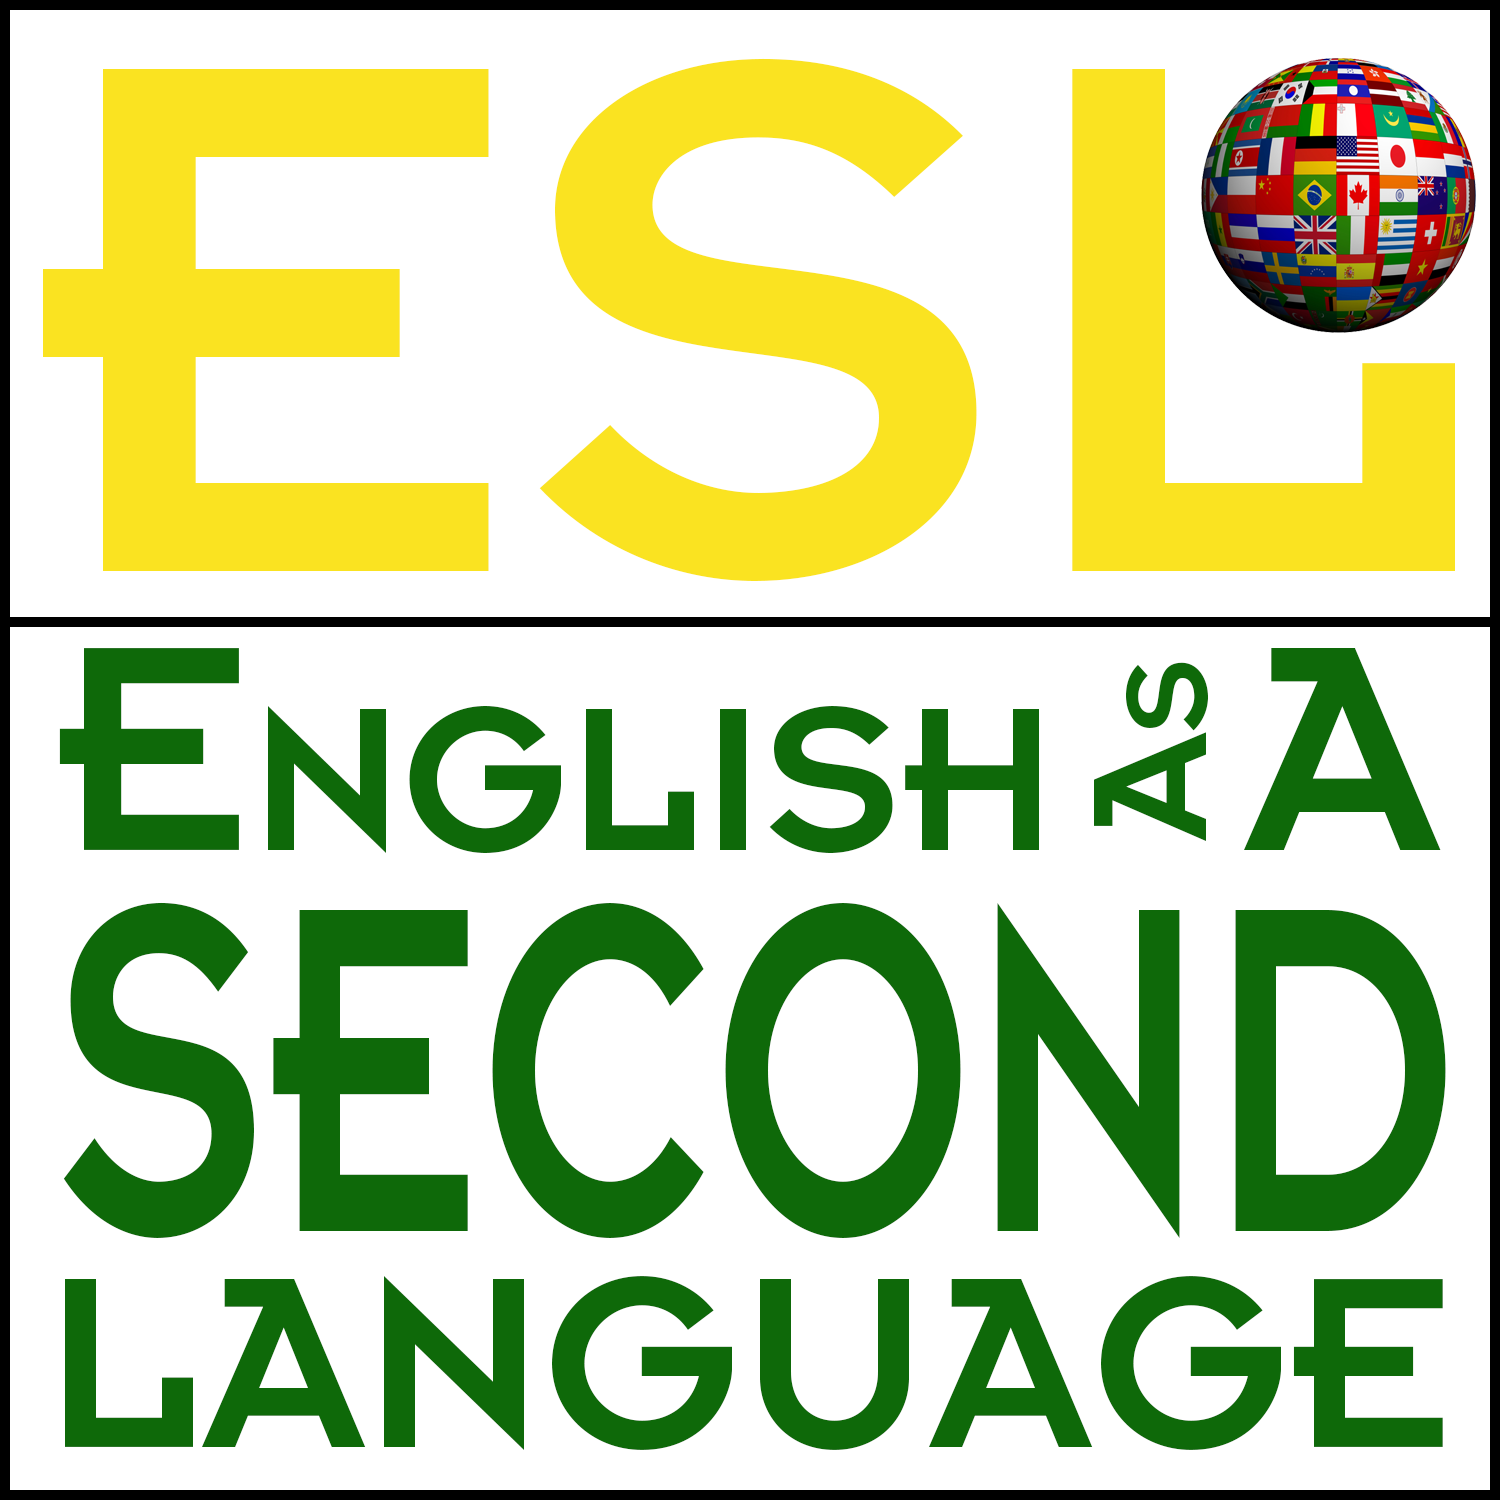 Second на английском. ESL English second language. English as a second language ESL. Second английский. English as a second language ESL ответы.